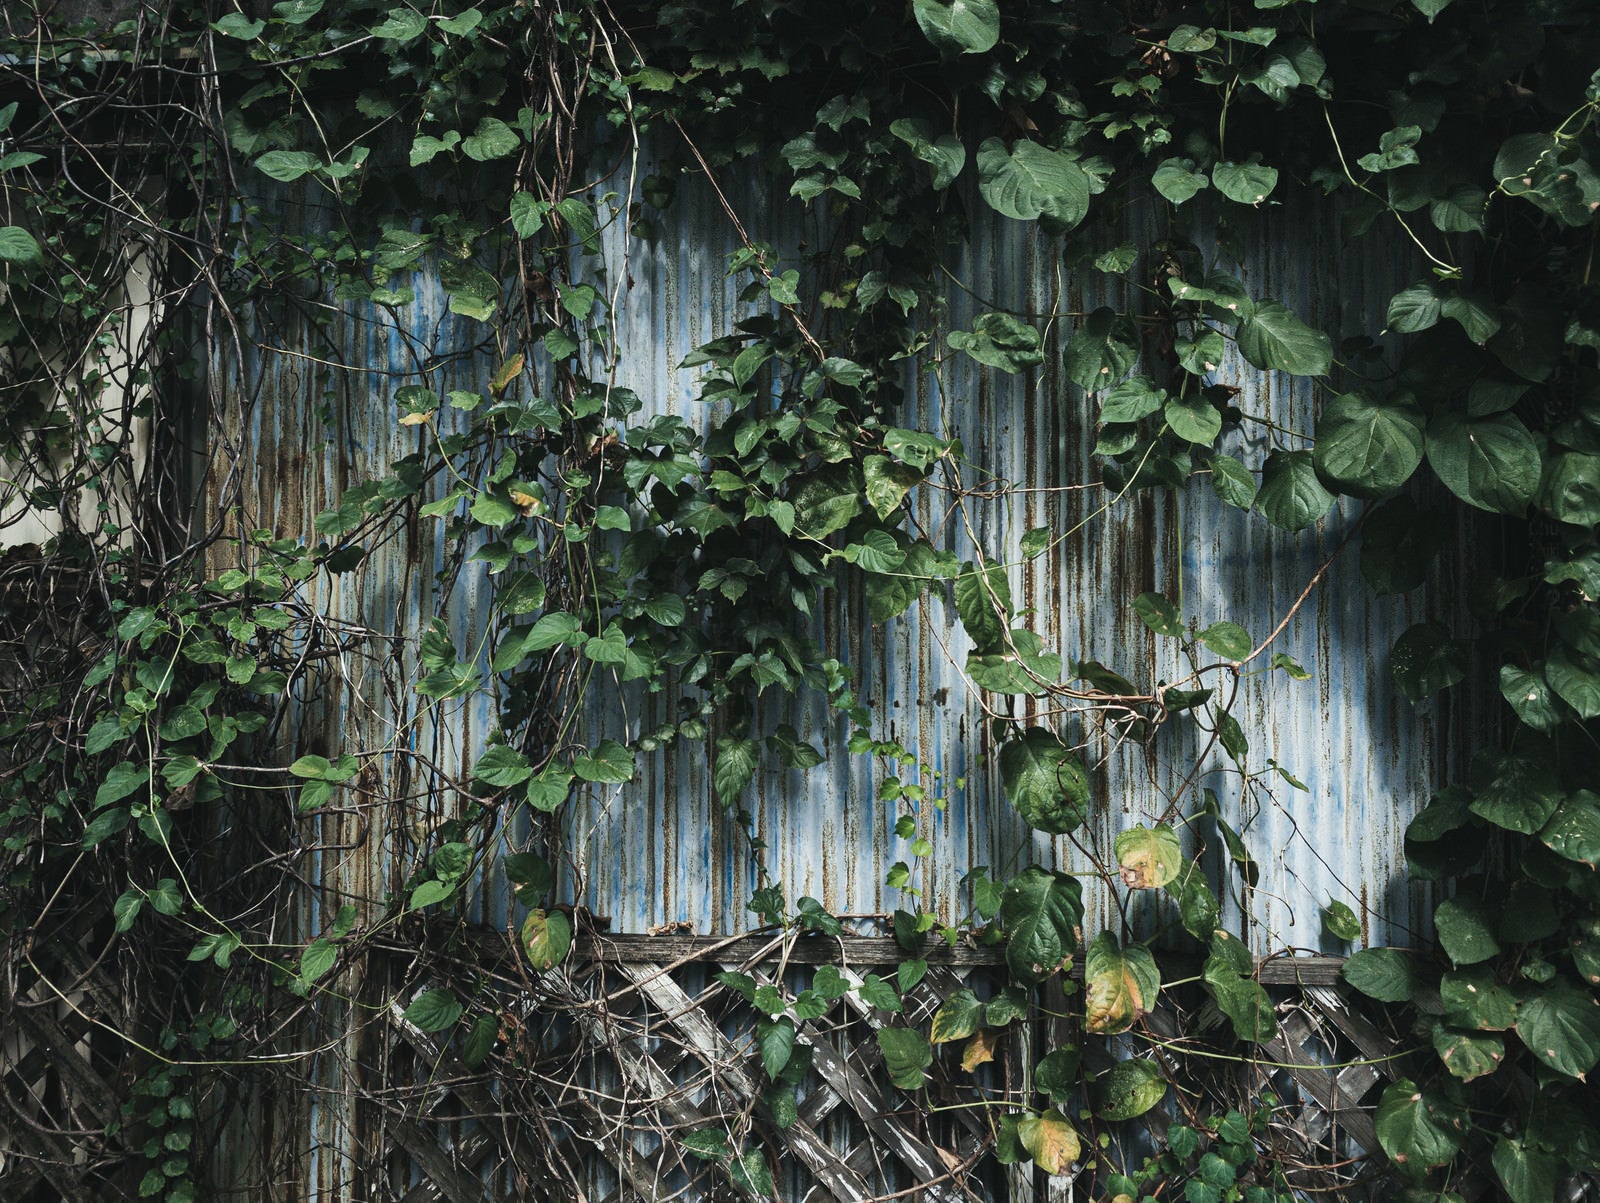 「つる植物で囲まれた廃屋の壁」の写真